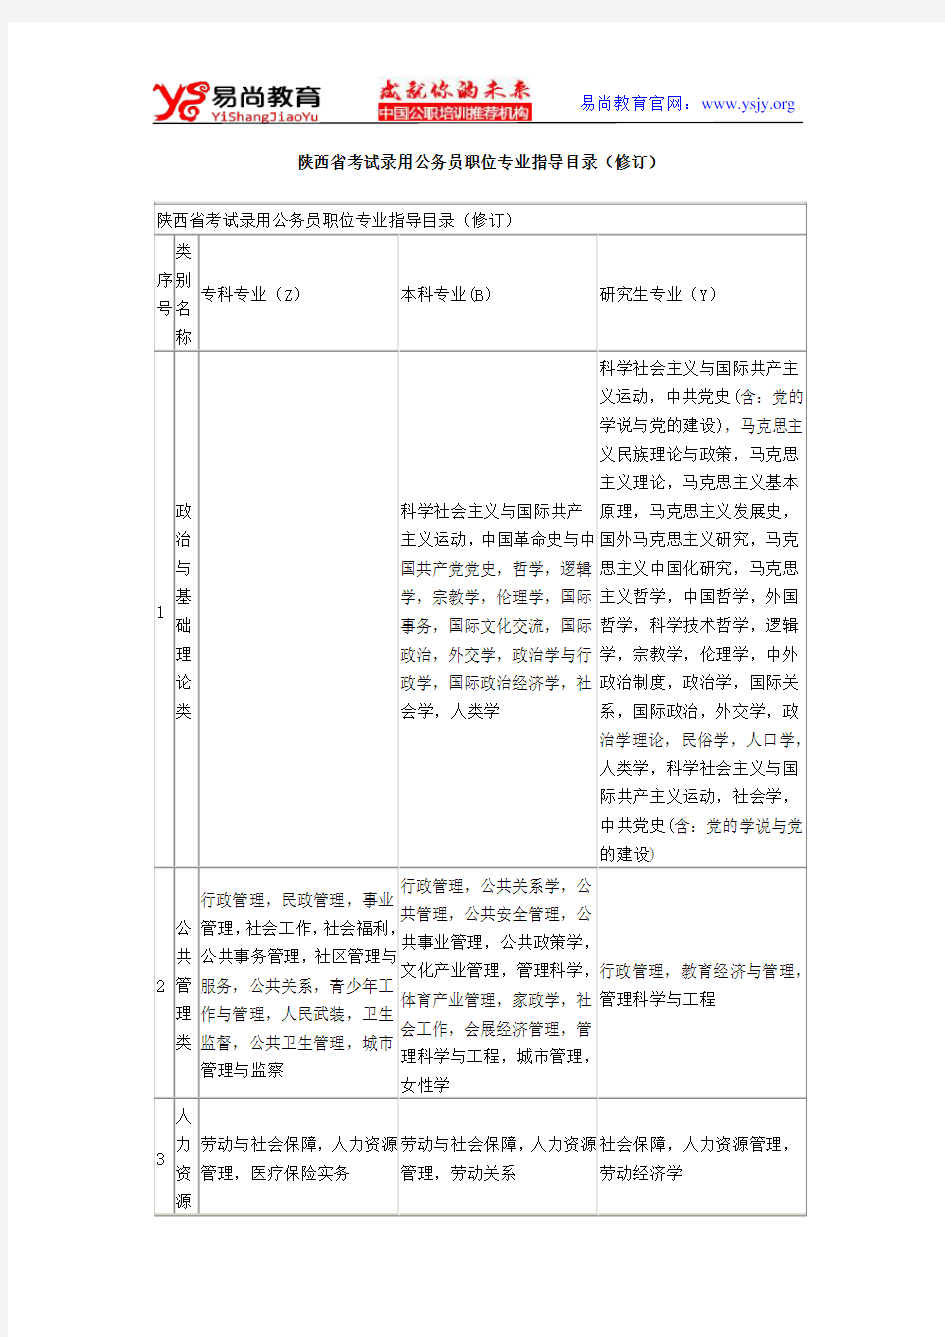 陕西省公务员考试专业目录对照表(最新版)